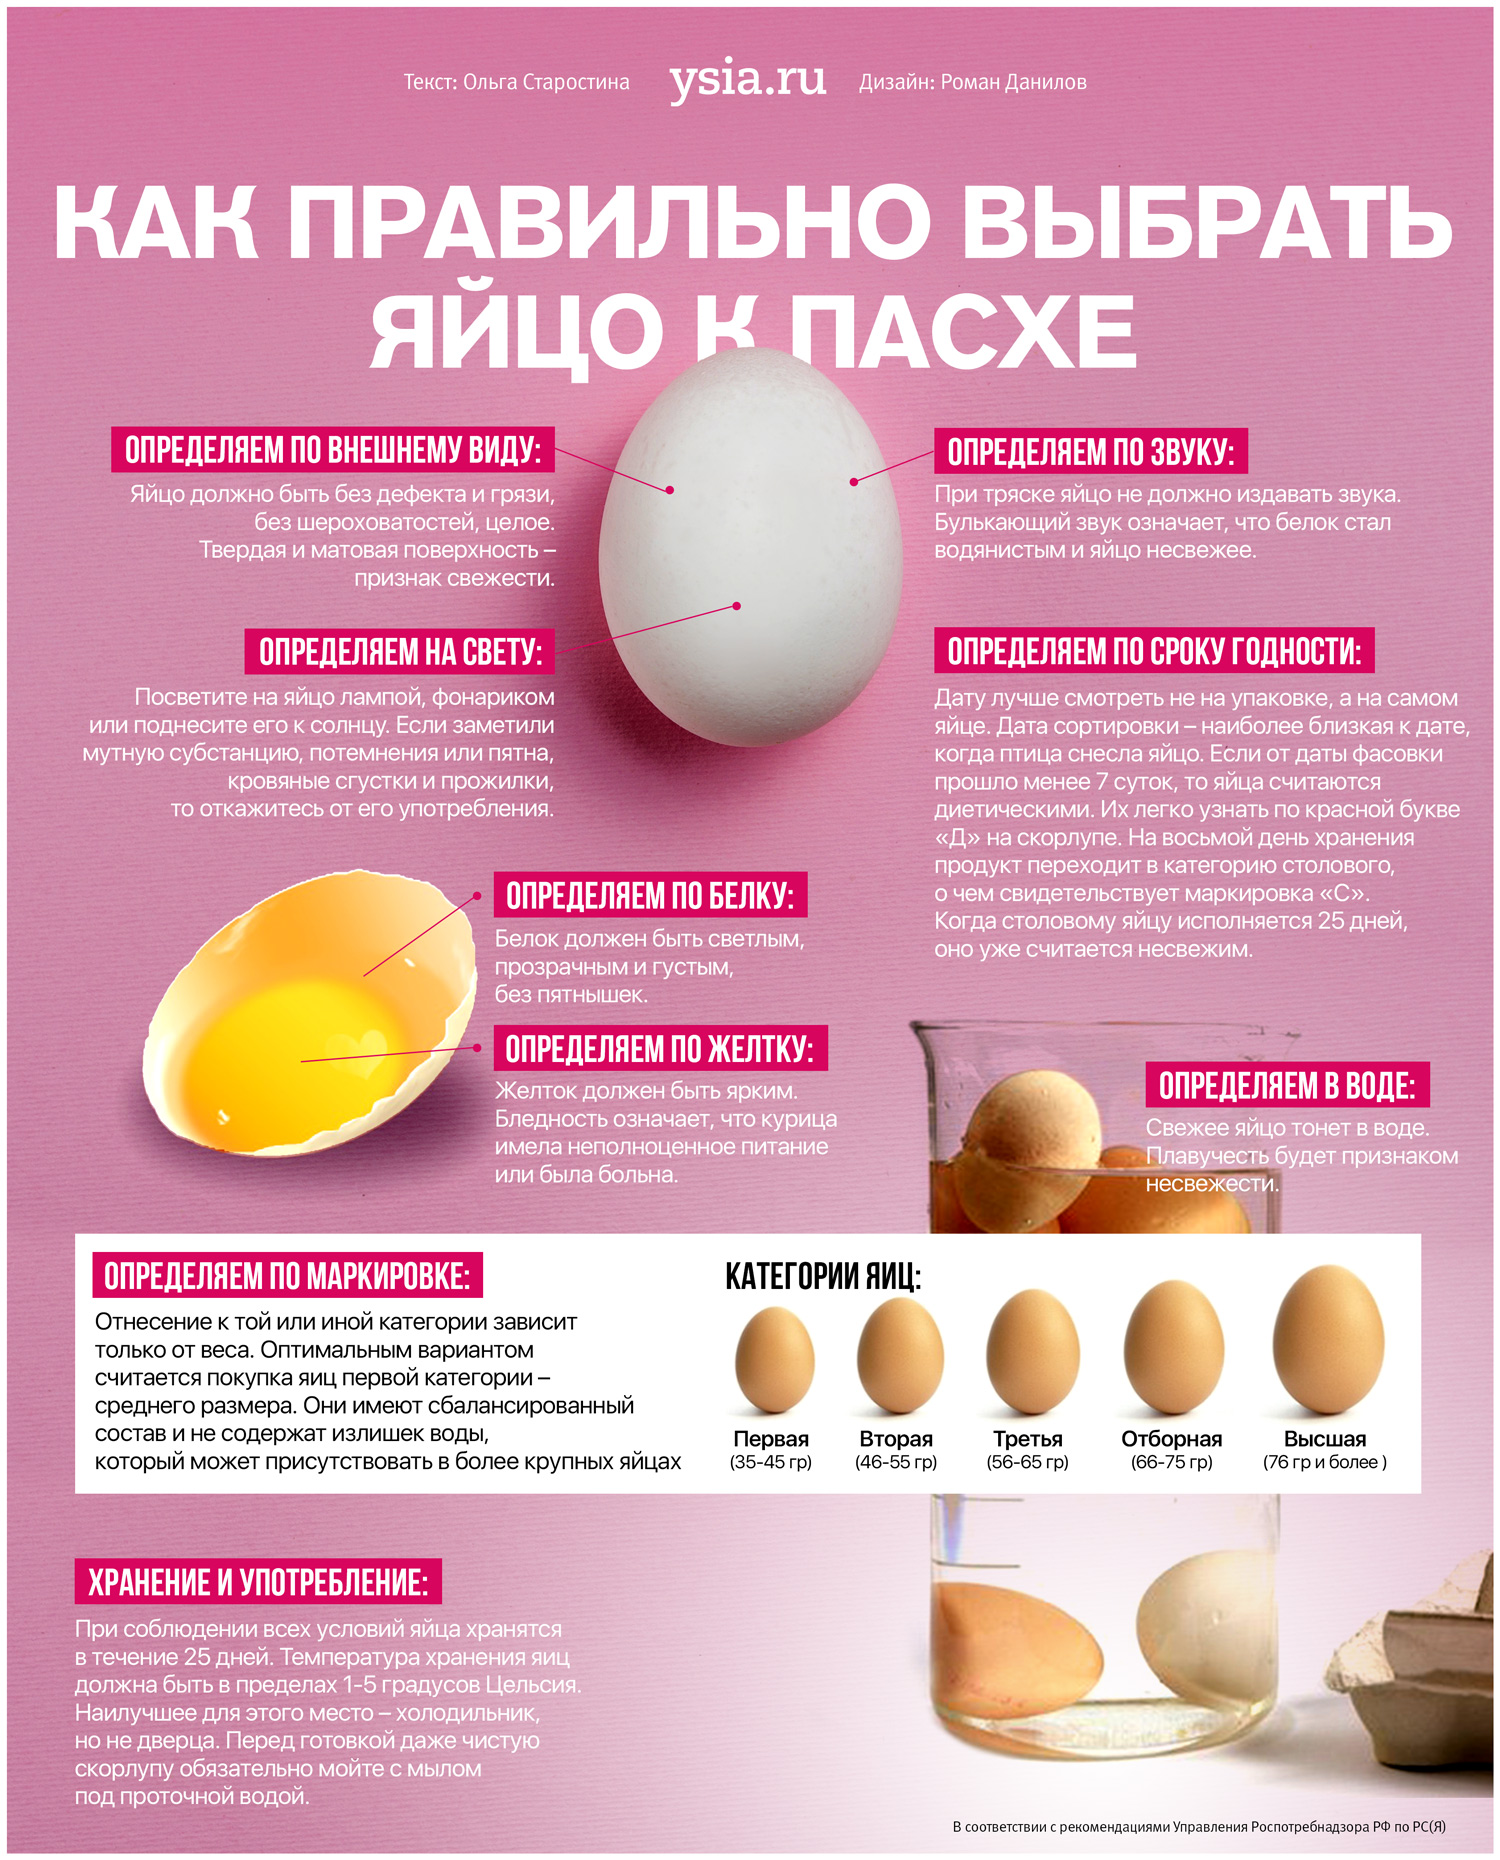 Как получить сильнейшее яйцо. Как выбрать яйца. Как правильно выбирать яйца. Инфографика яйцо. Категории яиц куриных.